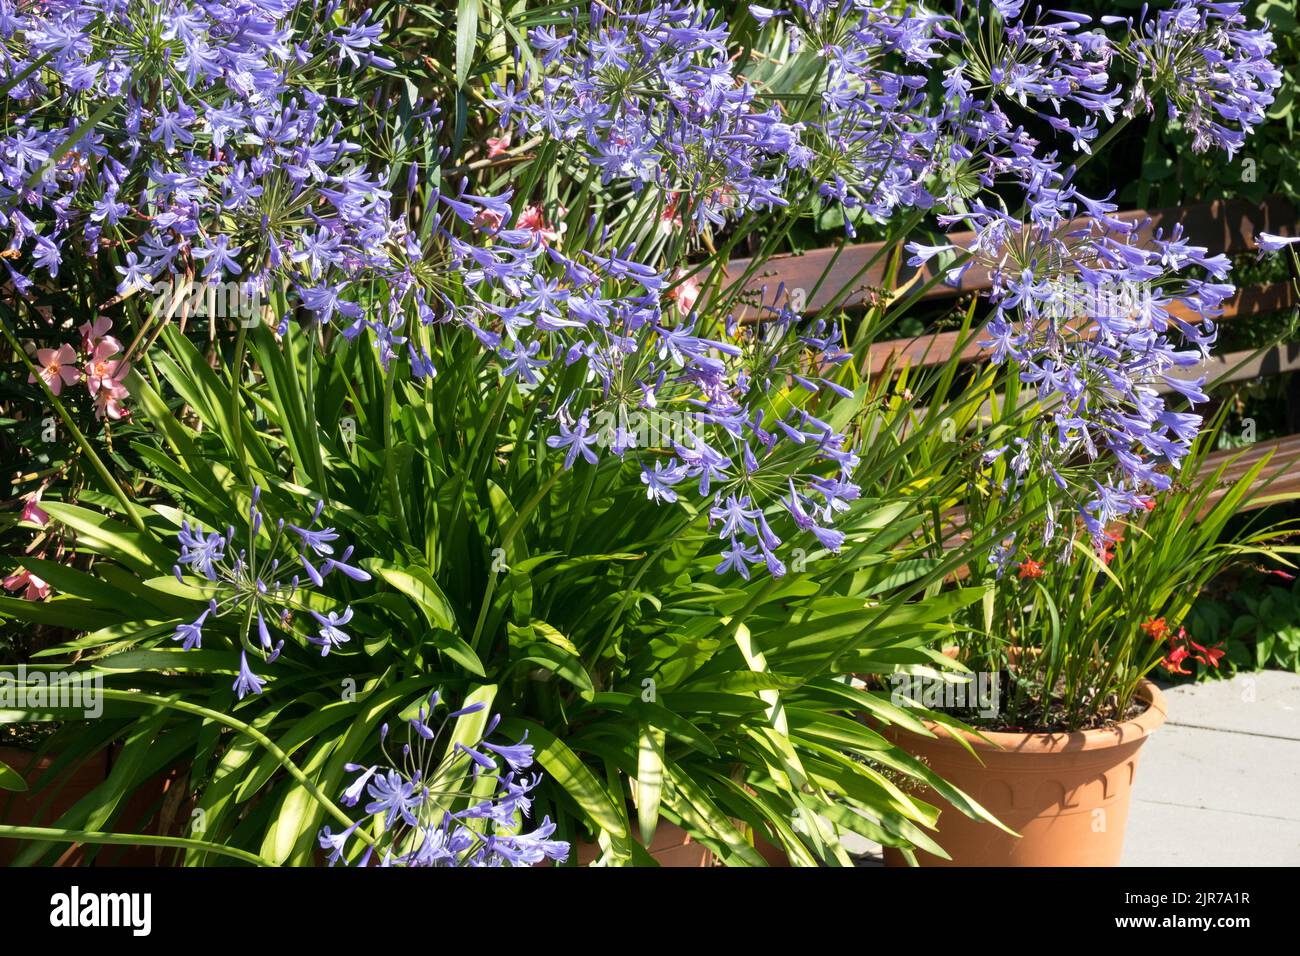 Afrikanische Lilie, Agapanthus, Nillilie, Pflanze, Afrikanische Blaue Lilie, Blumen, Topf, Innenhof, Garten Stockfoto